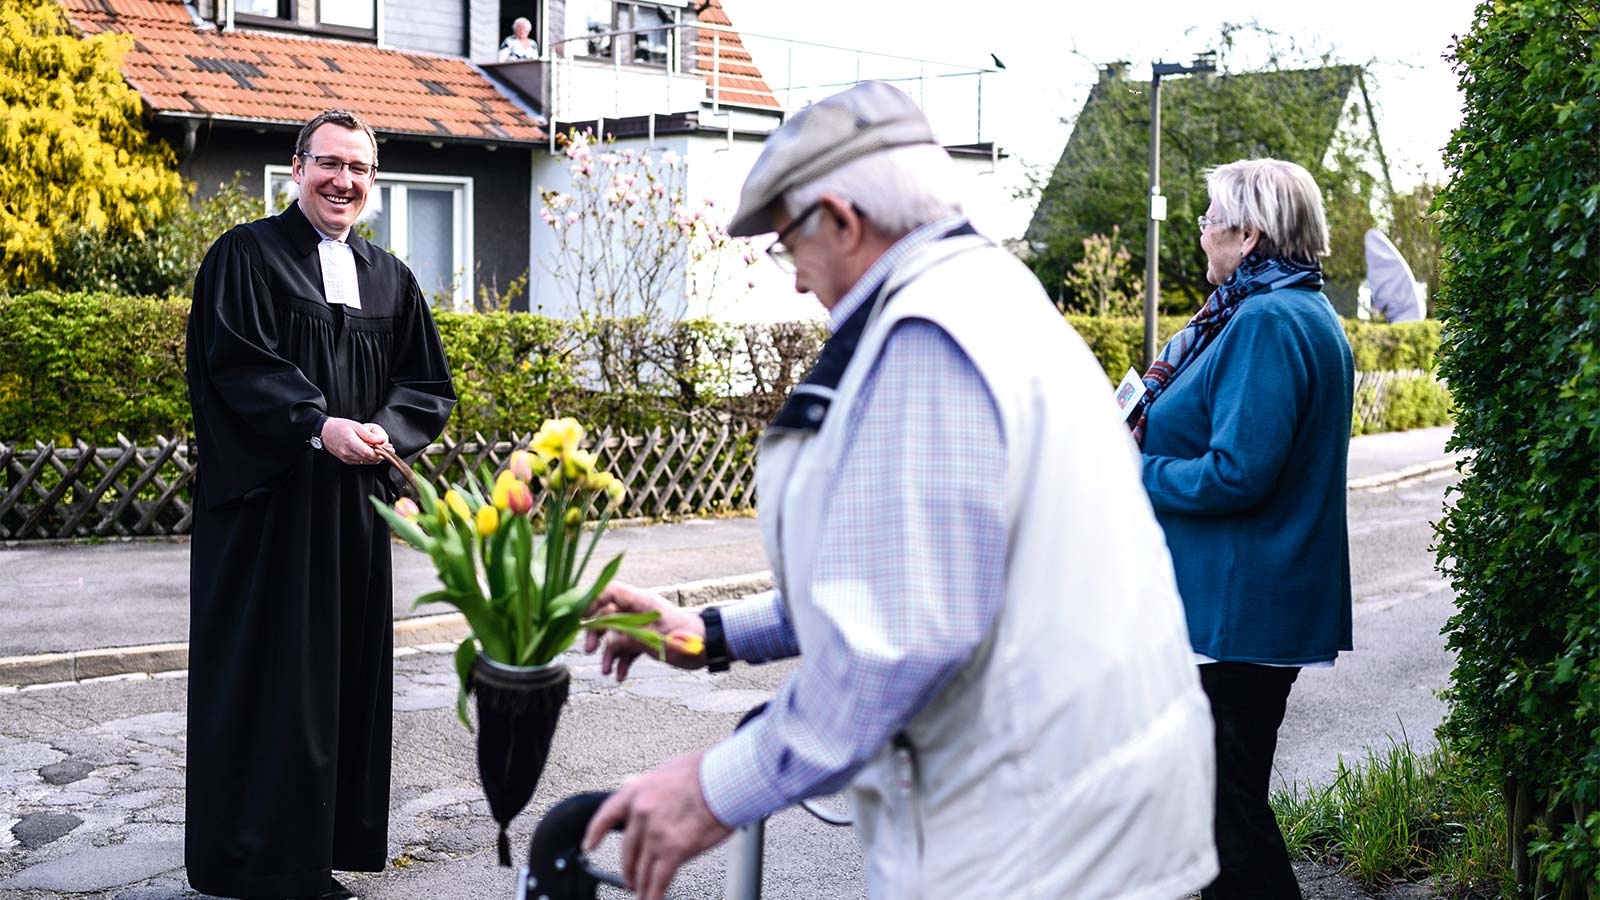 Pfarrer Johannes Ruschke von der evangelischen Kirchengemeinde Dortmund-Asseln zog am Ostersonntag durch die Gemeinde und verteilte mit Sicherheitsabstand Blumen.